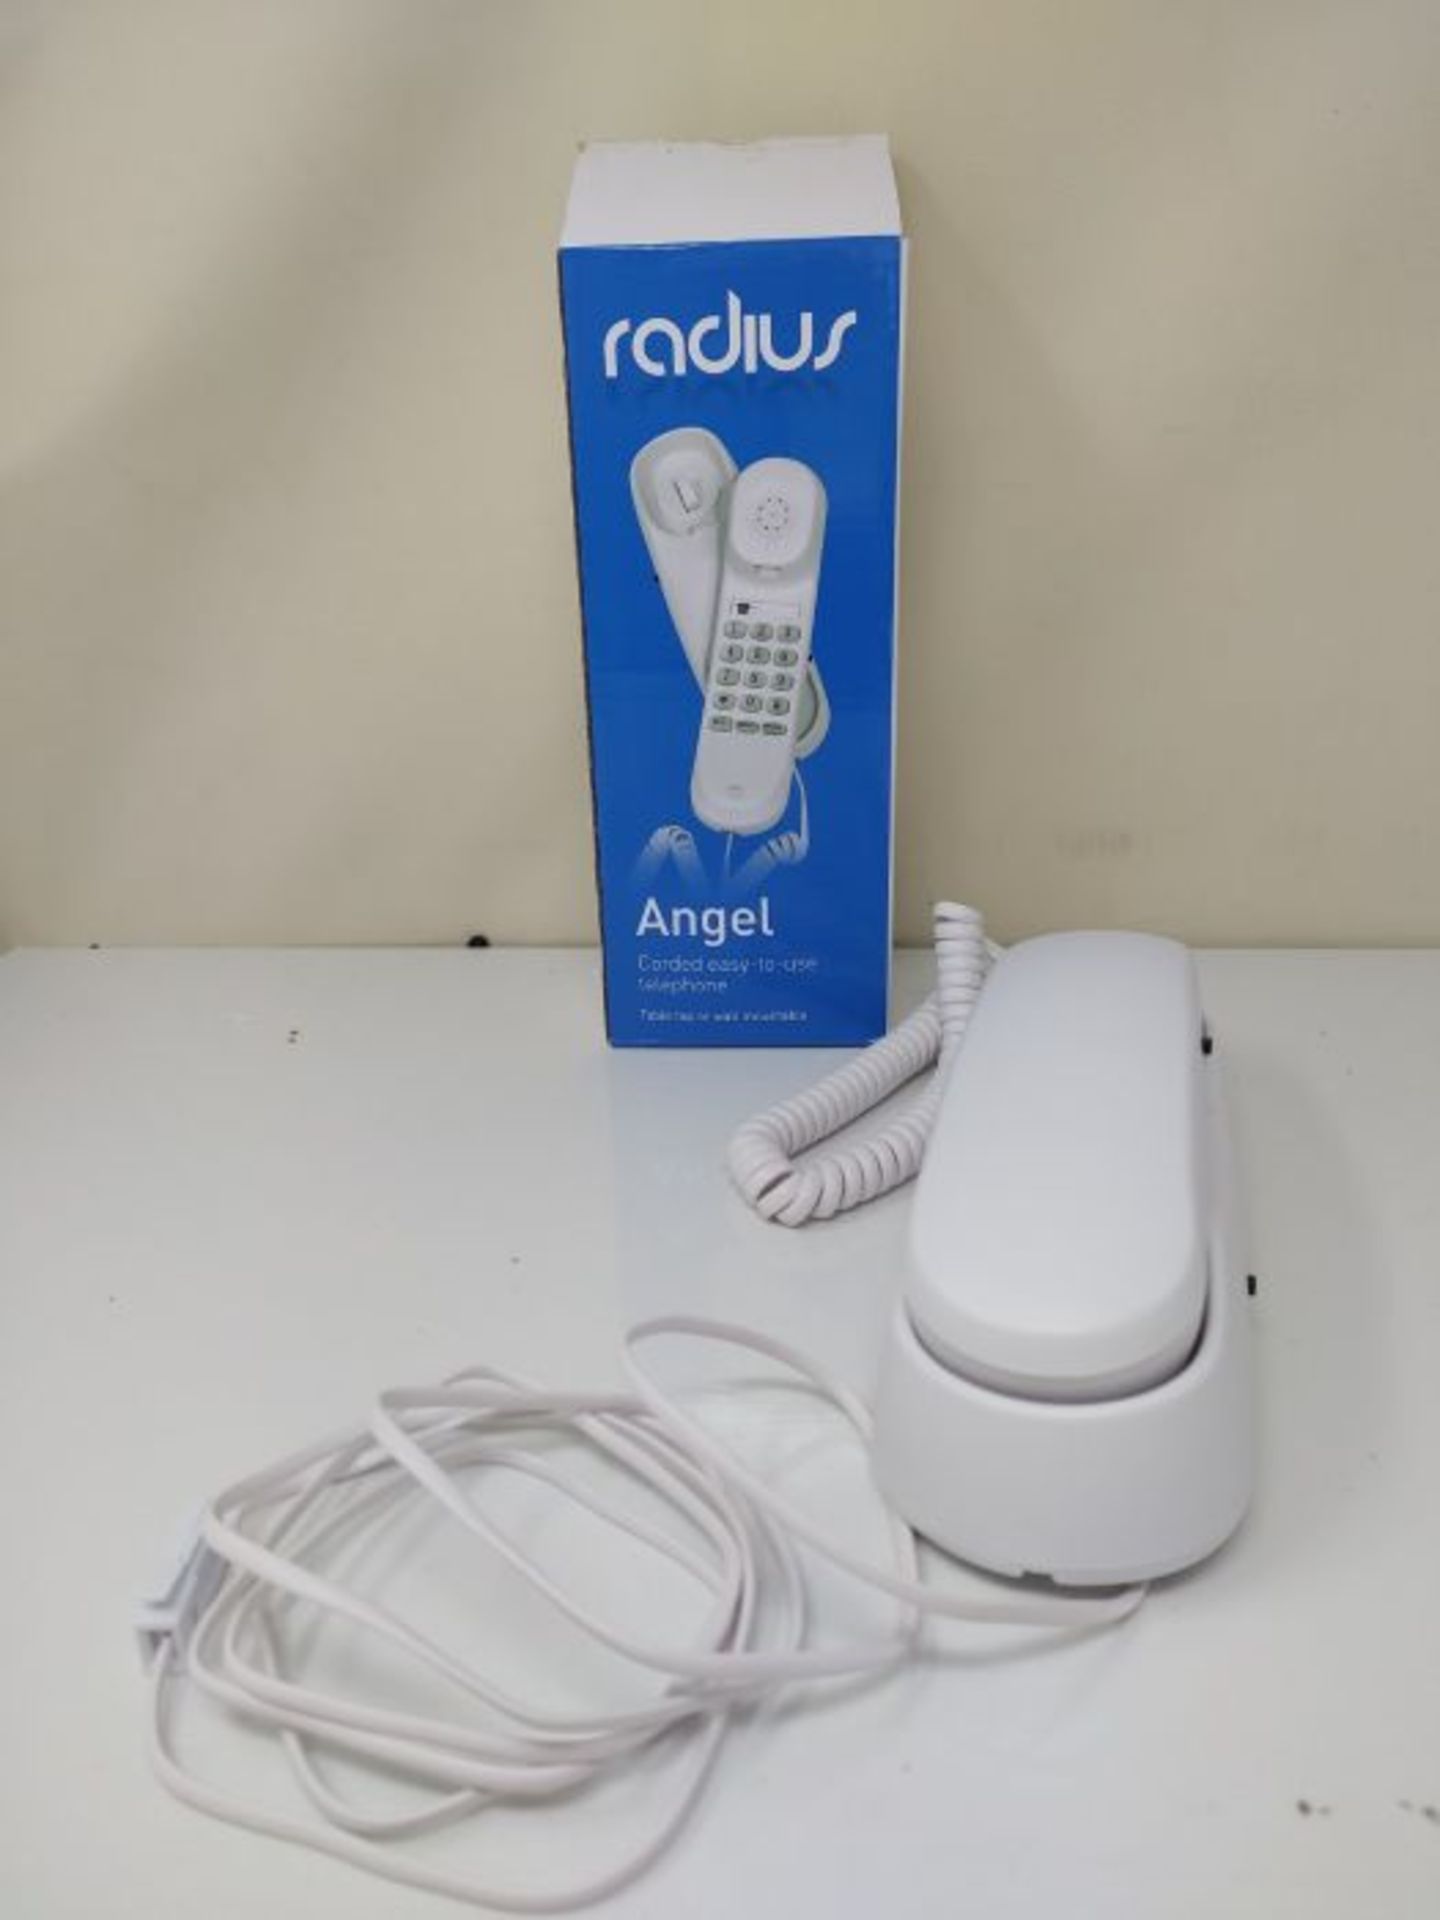 Radius Angel Corded Gondola Phone - White - Image 2 of 2